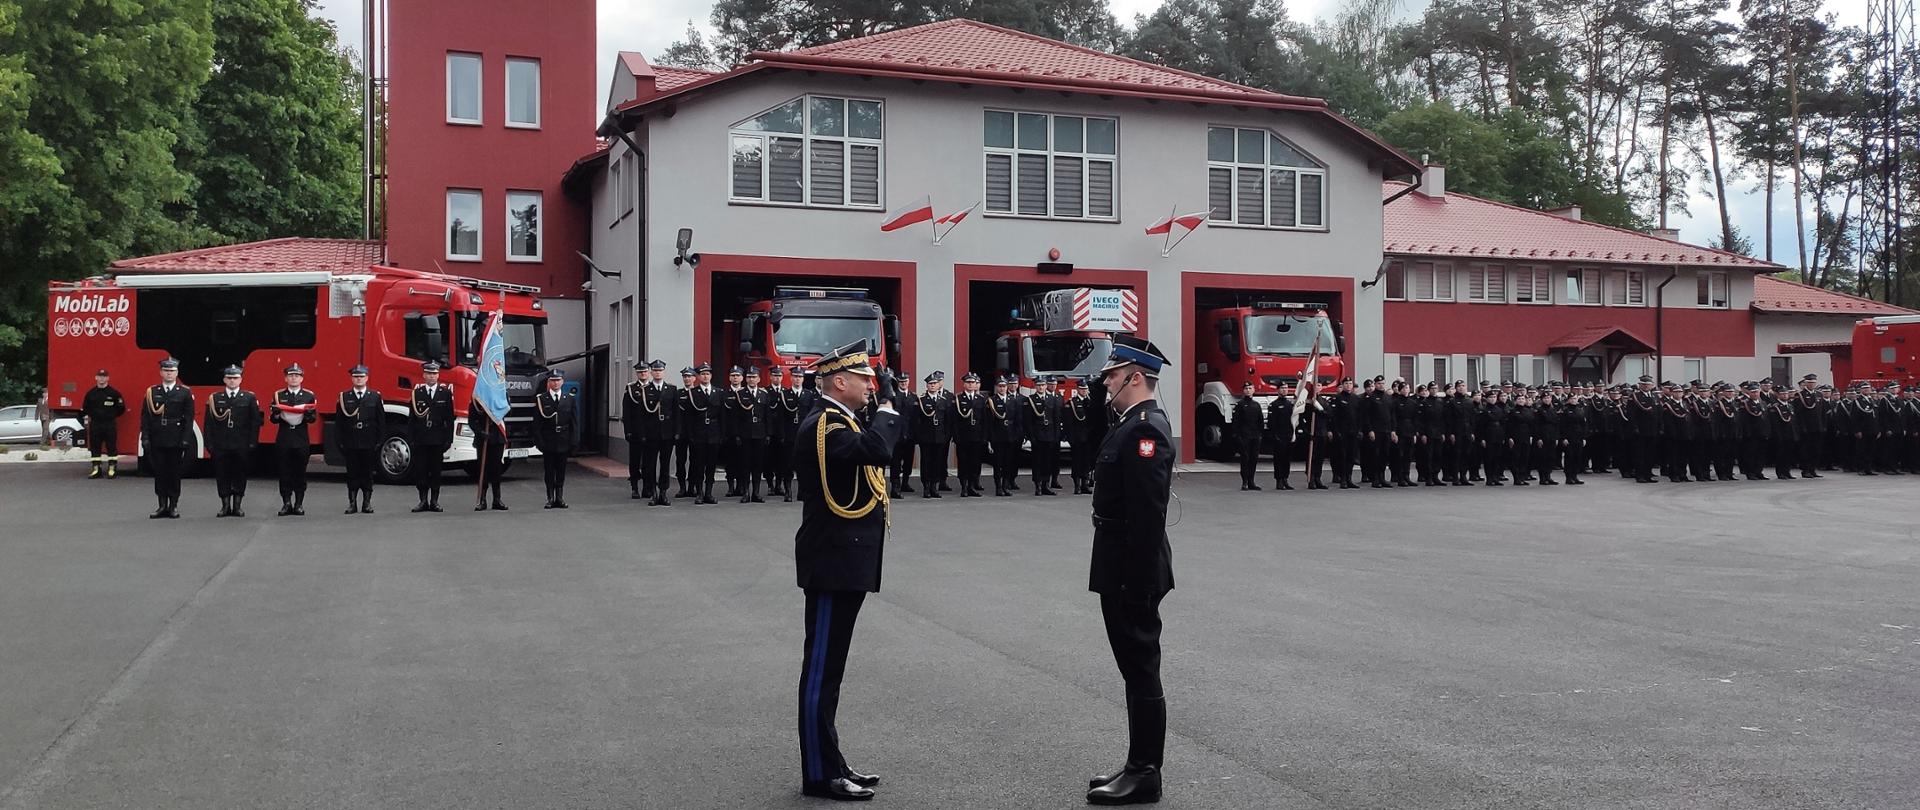 Na zdjęciu widzimy zastępcę komendanta głównego oraz prowadzącego uroczystość oficera oddającego honory w tle widzimy pododdziały straży pożarnej.